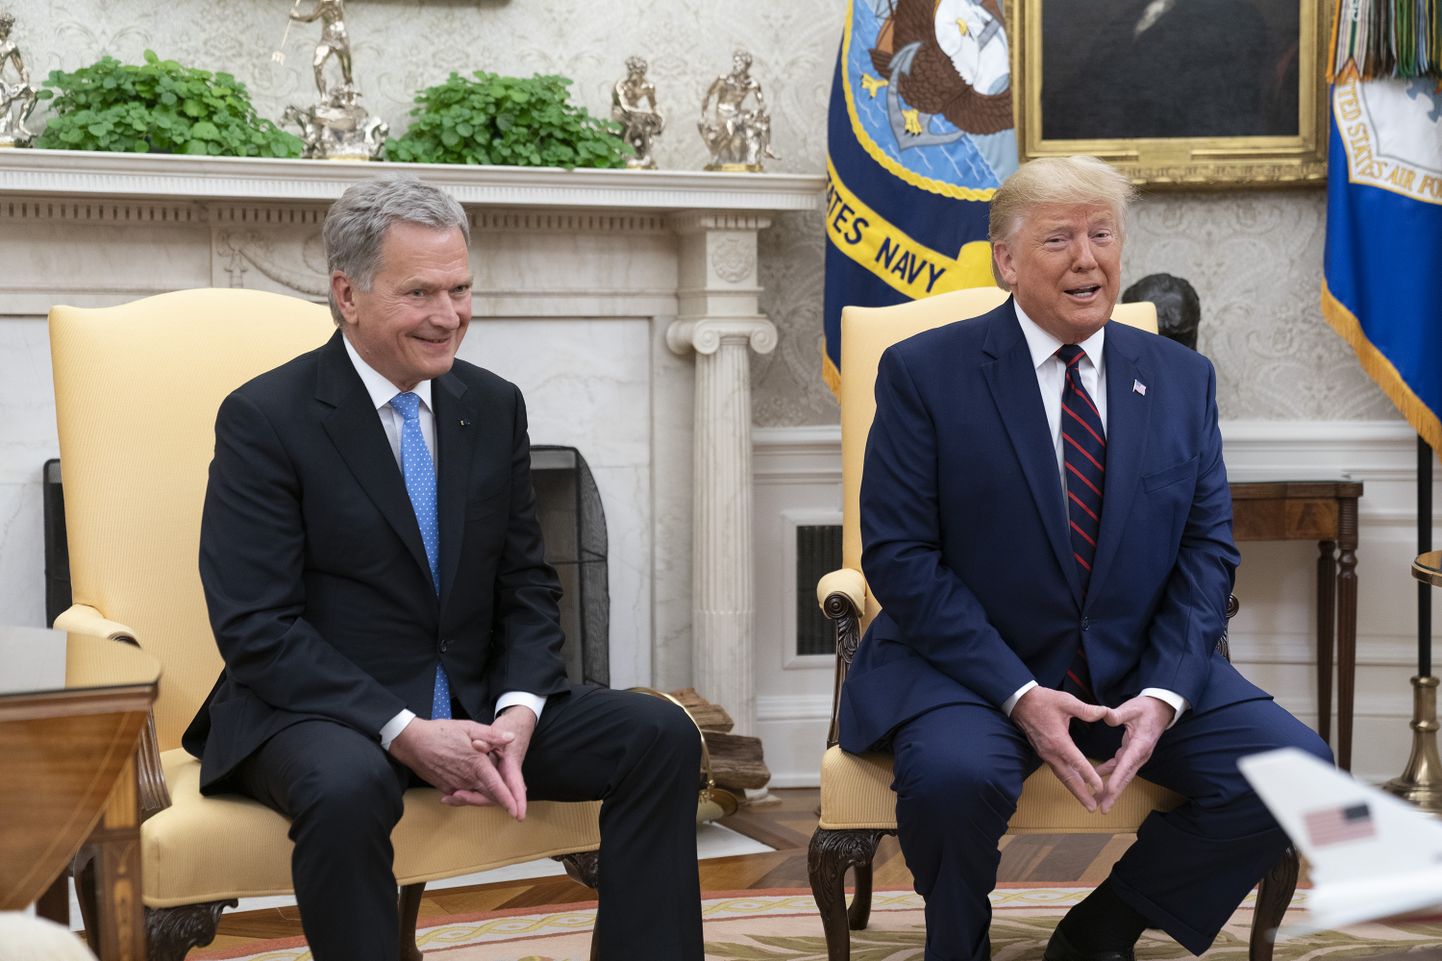 Soome president Sauli Niinistö (vasakul) ja USA president Donald Trump eile Valges majas.